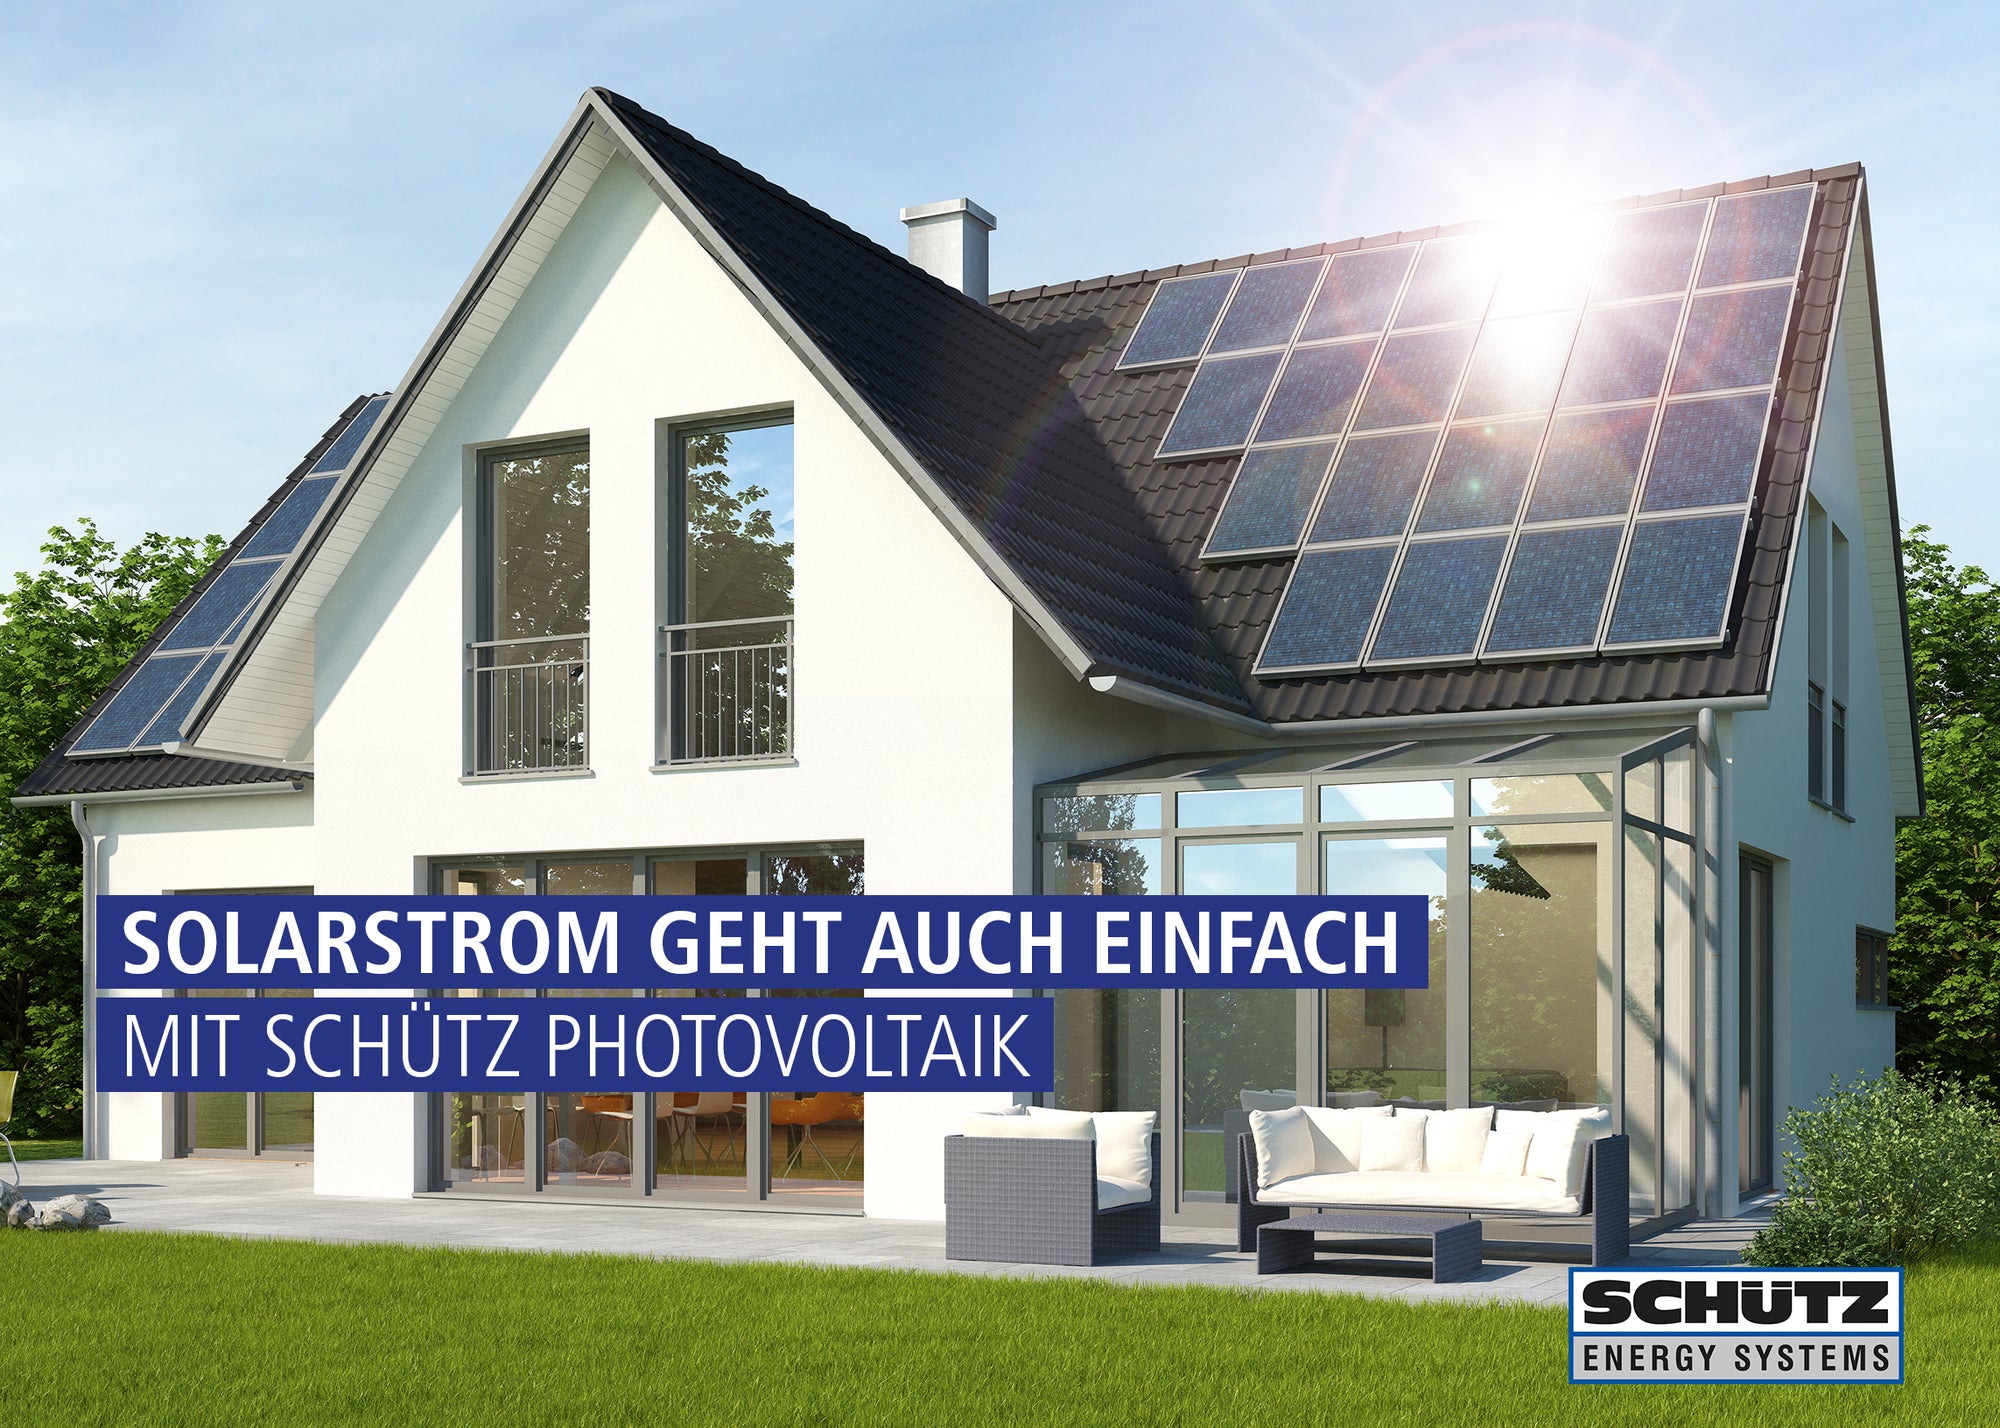 Schütz Energy Systems zeigt ein modernes Haus, welches mit Solarenergie betrieben wird. Darauf steht der Spruch "Solarstrom geht auch einfach mit Schütz Photovoltaik"